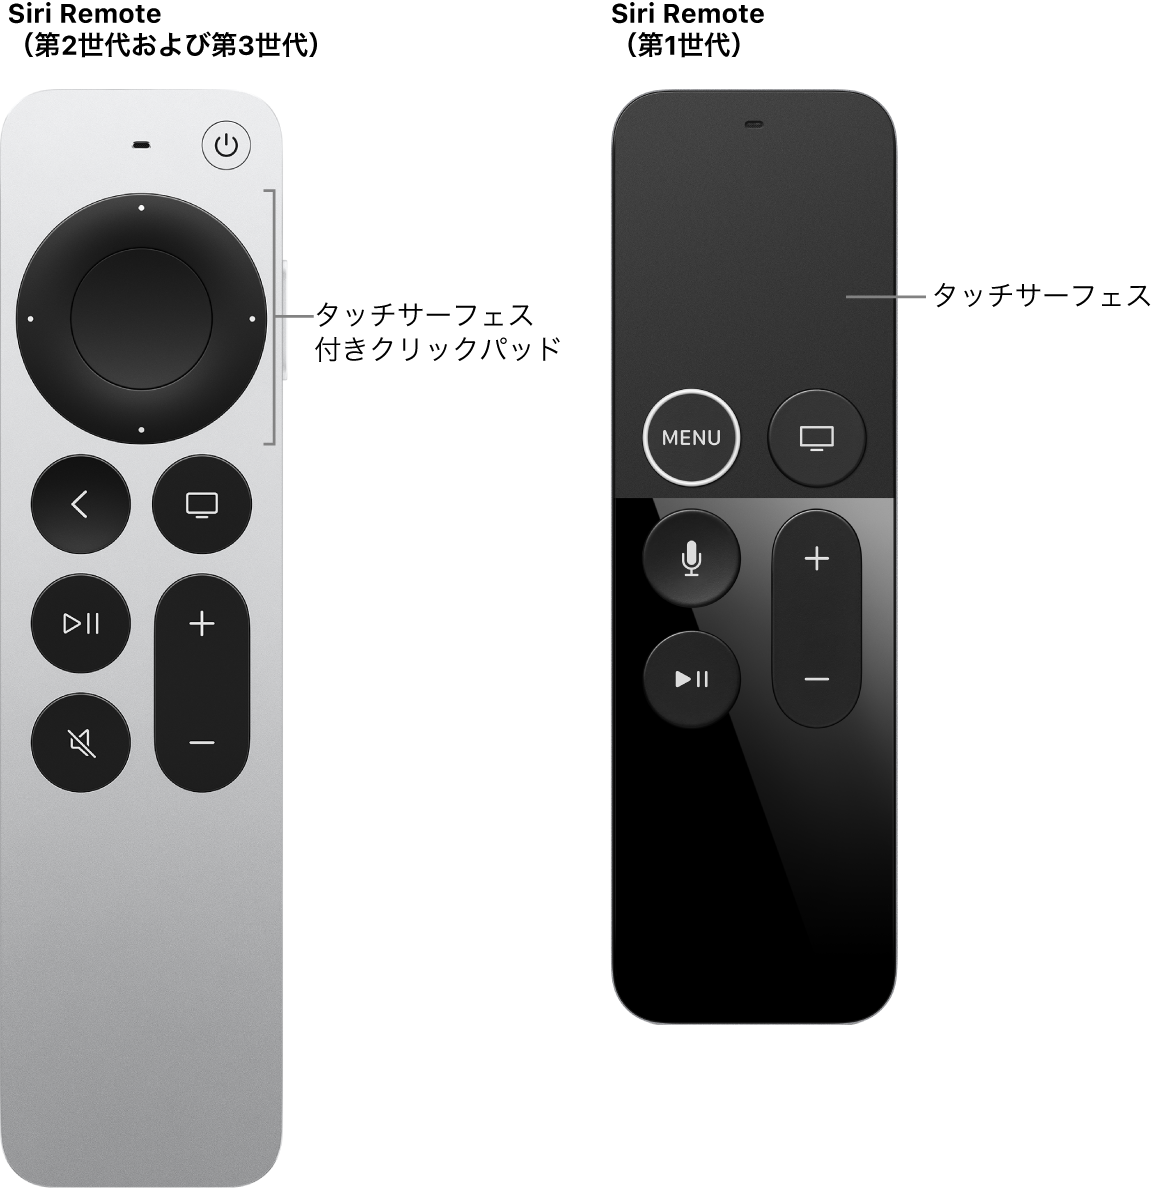 クリックパッドのあるSiri Remote（第2世代および第3世代）とタッチサーフェスのあるSiri Remote（第1世代）